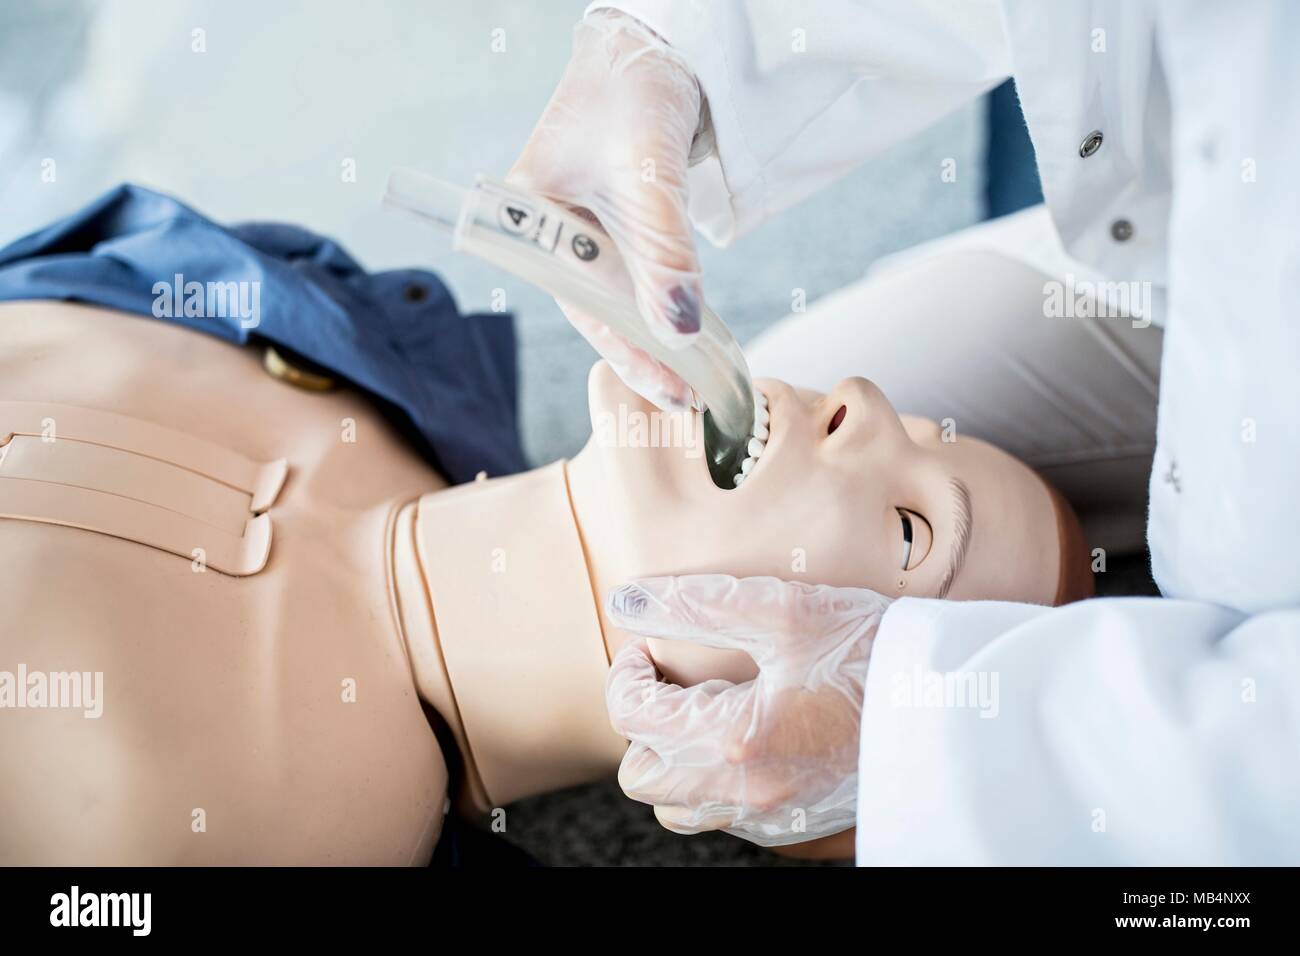 Doktor, der endotrachealen Intubation auf einer trainingspuppe. Stockfoto